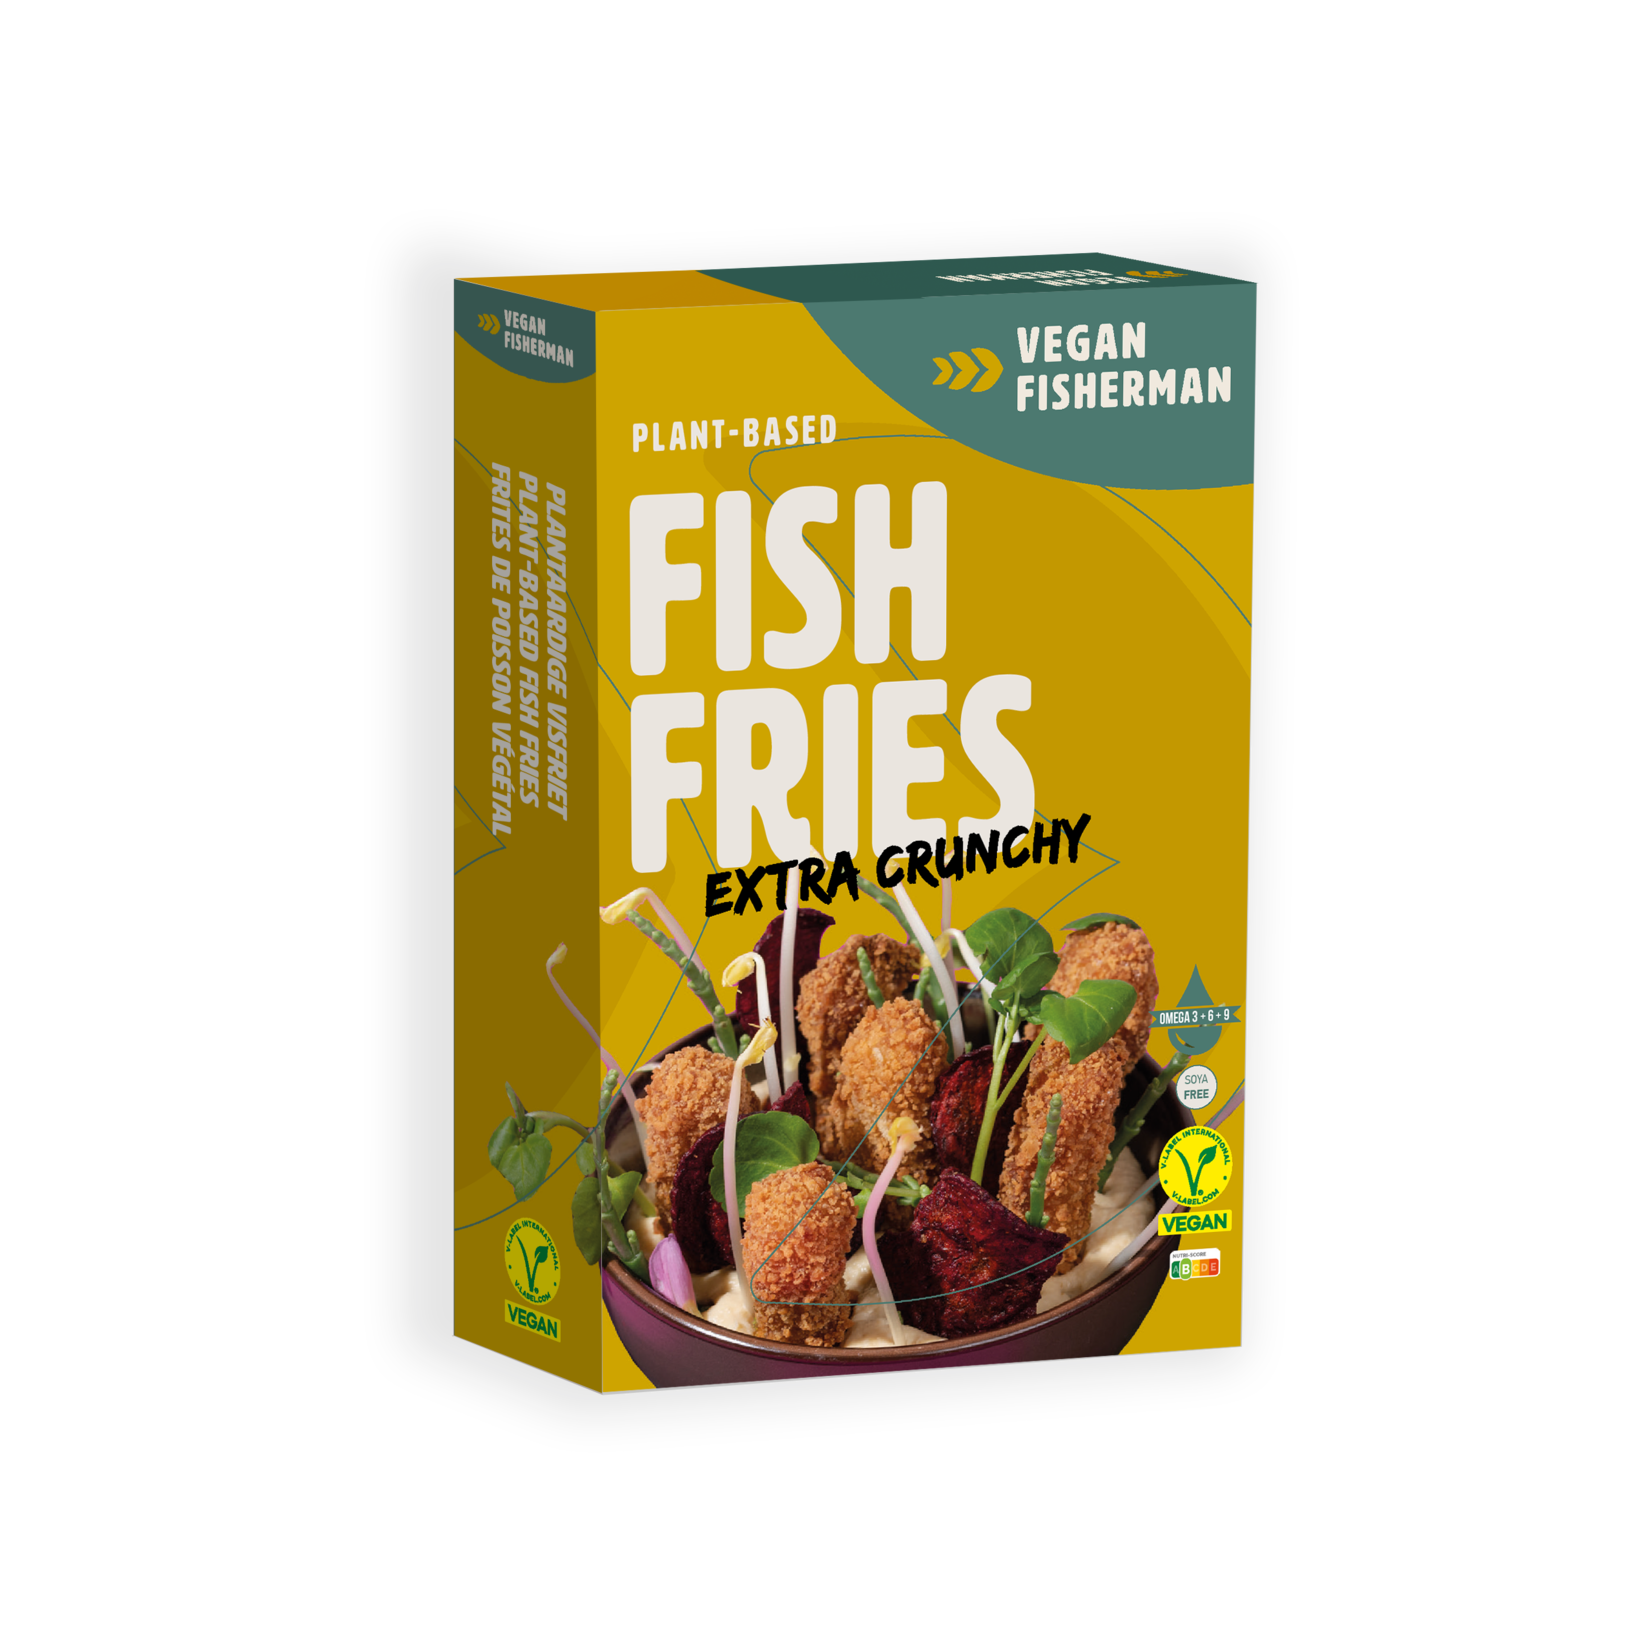 Vegan Visboer - Vegan Fisherman Kidsbox: Burger (65gr) and Fish Fries.